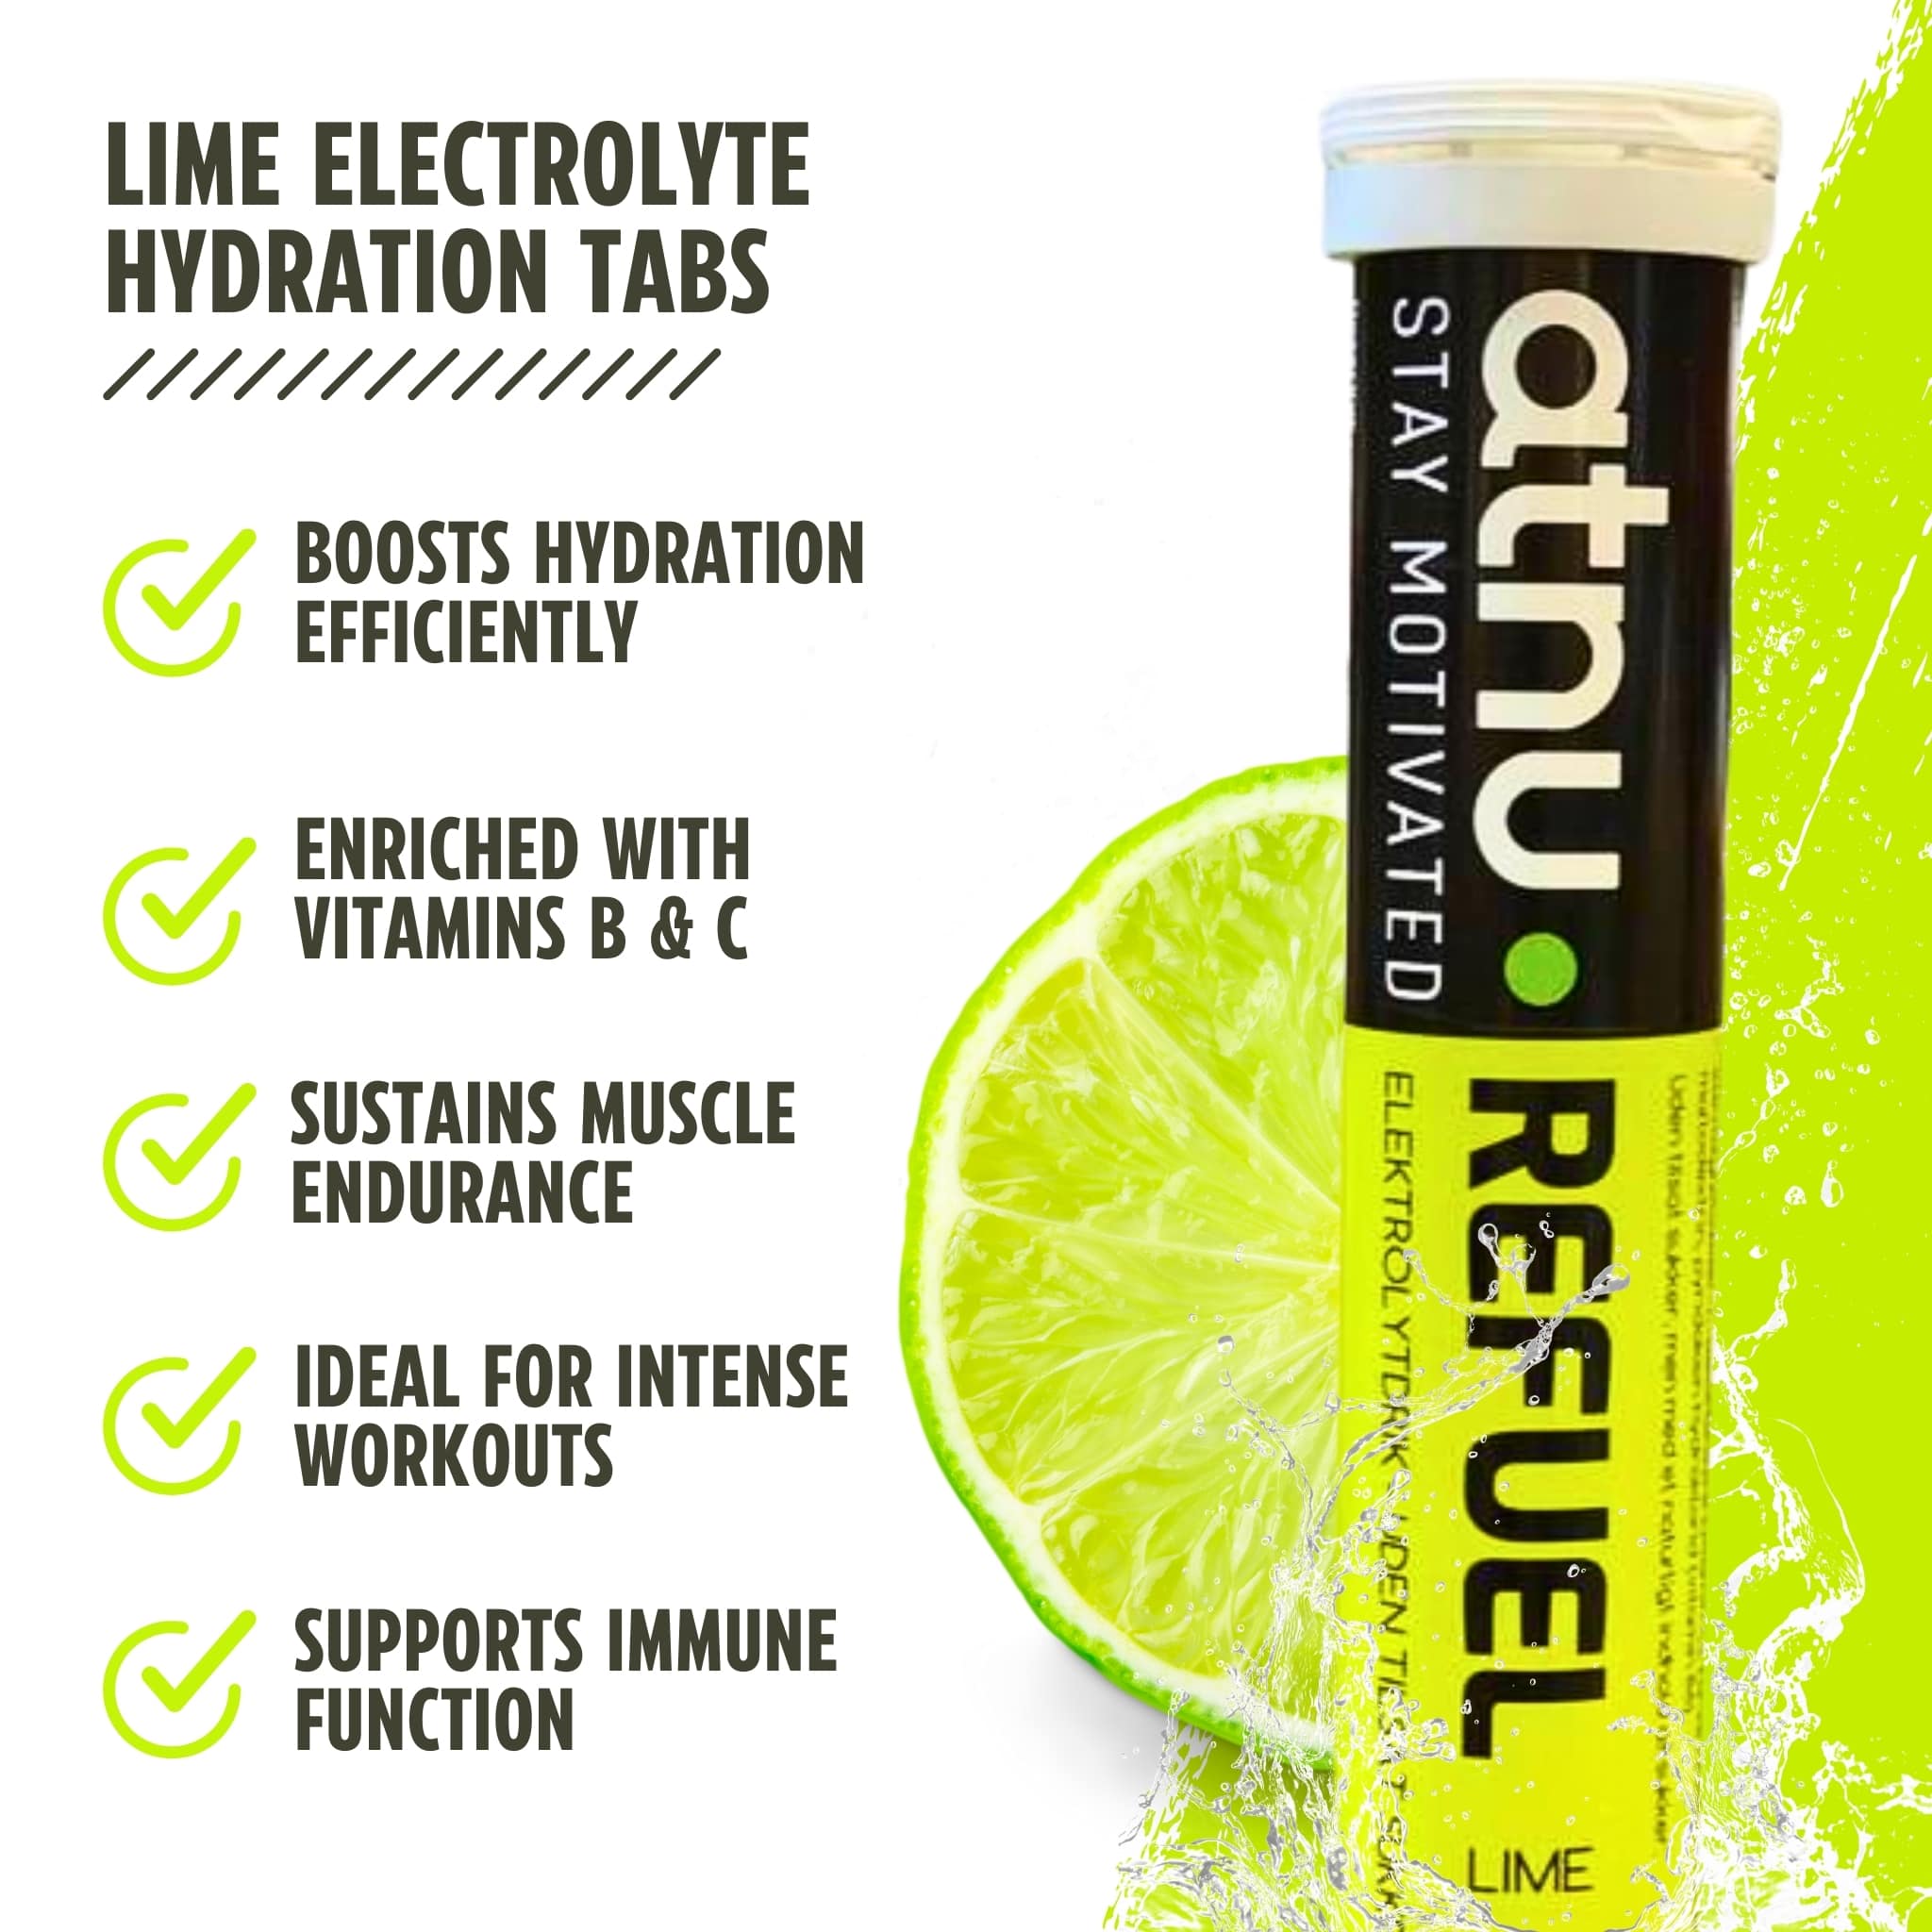 ATNU Refuel Elektrolyttabs Lime (20 tabs) - Benefits